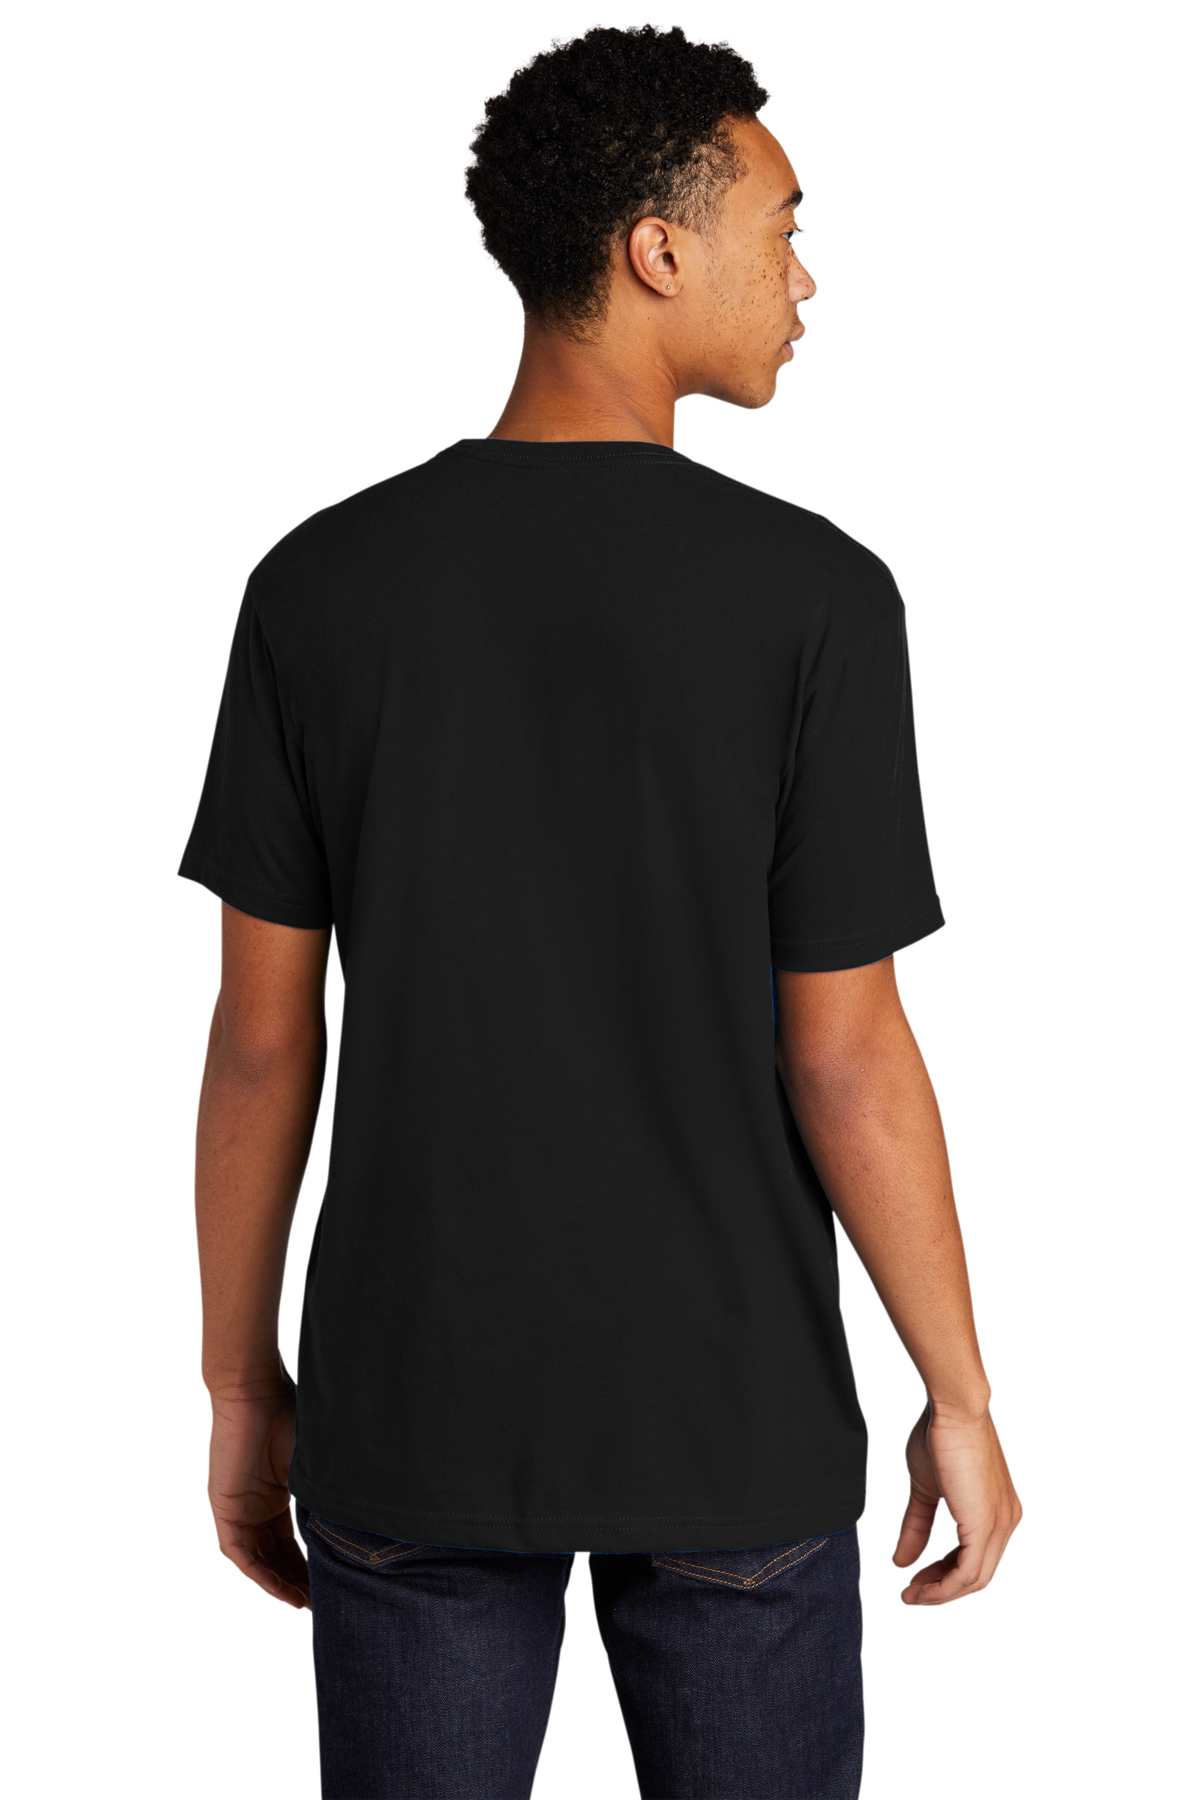 Next Level Apparel Unisex Sueded Crew Neck T-Shirt Colour: Black, Size